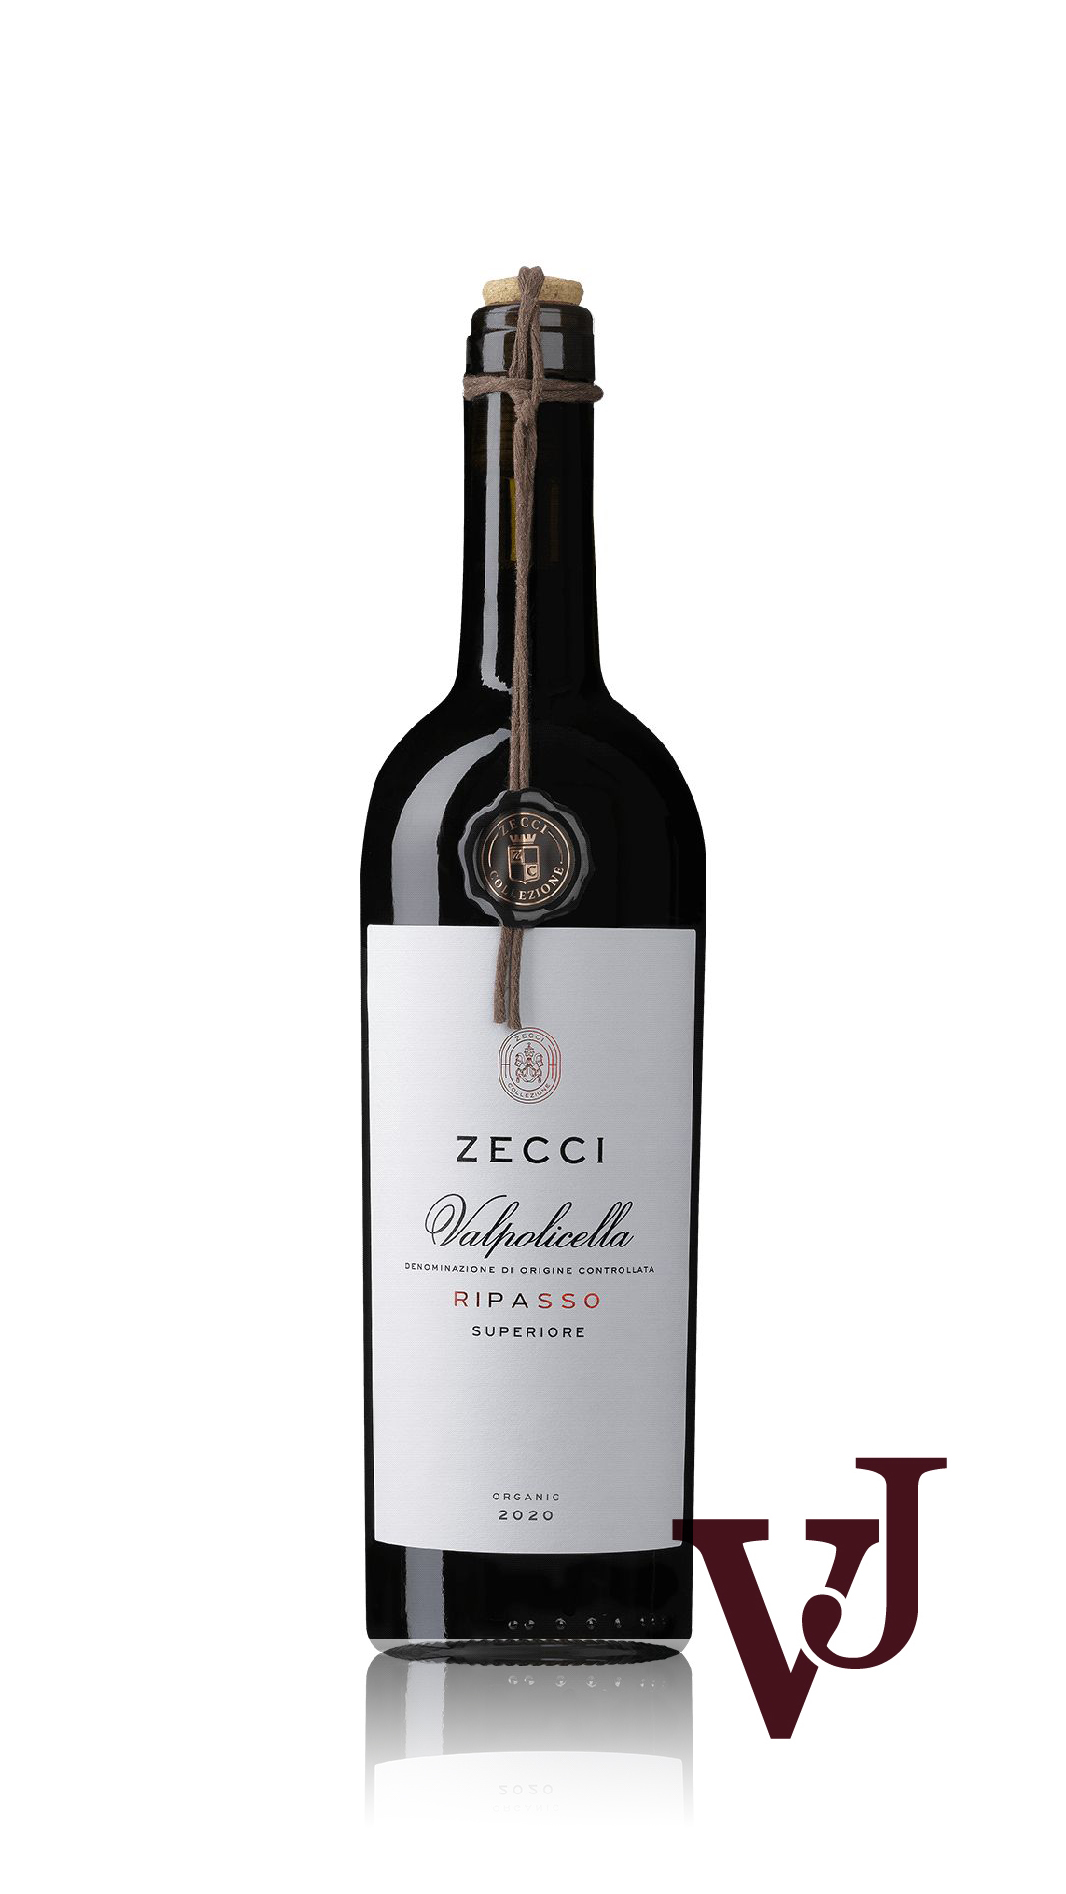 Rött Vin - Zecci Valpolicella Ripasso Superiore artikel nummer 7418901 från producenten Botter från området Italien - Vinjournalen.se